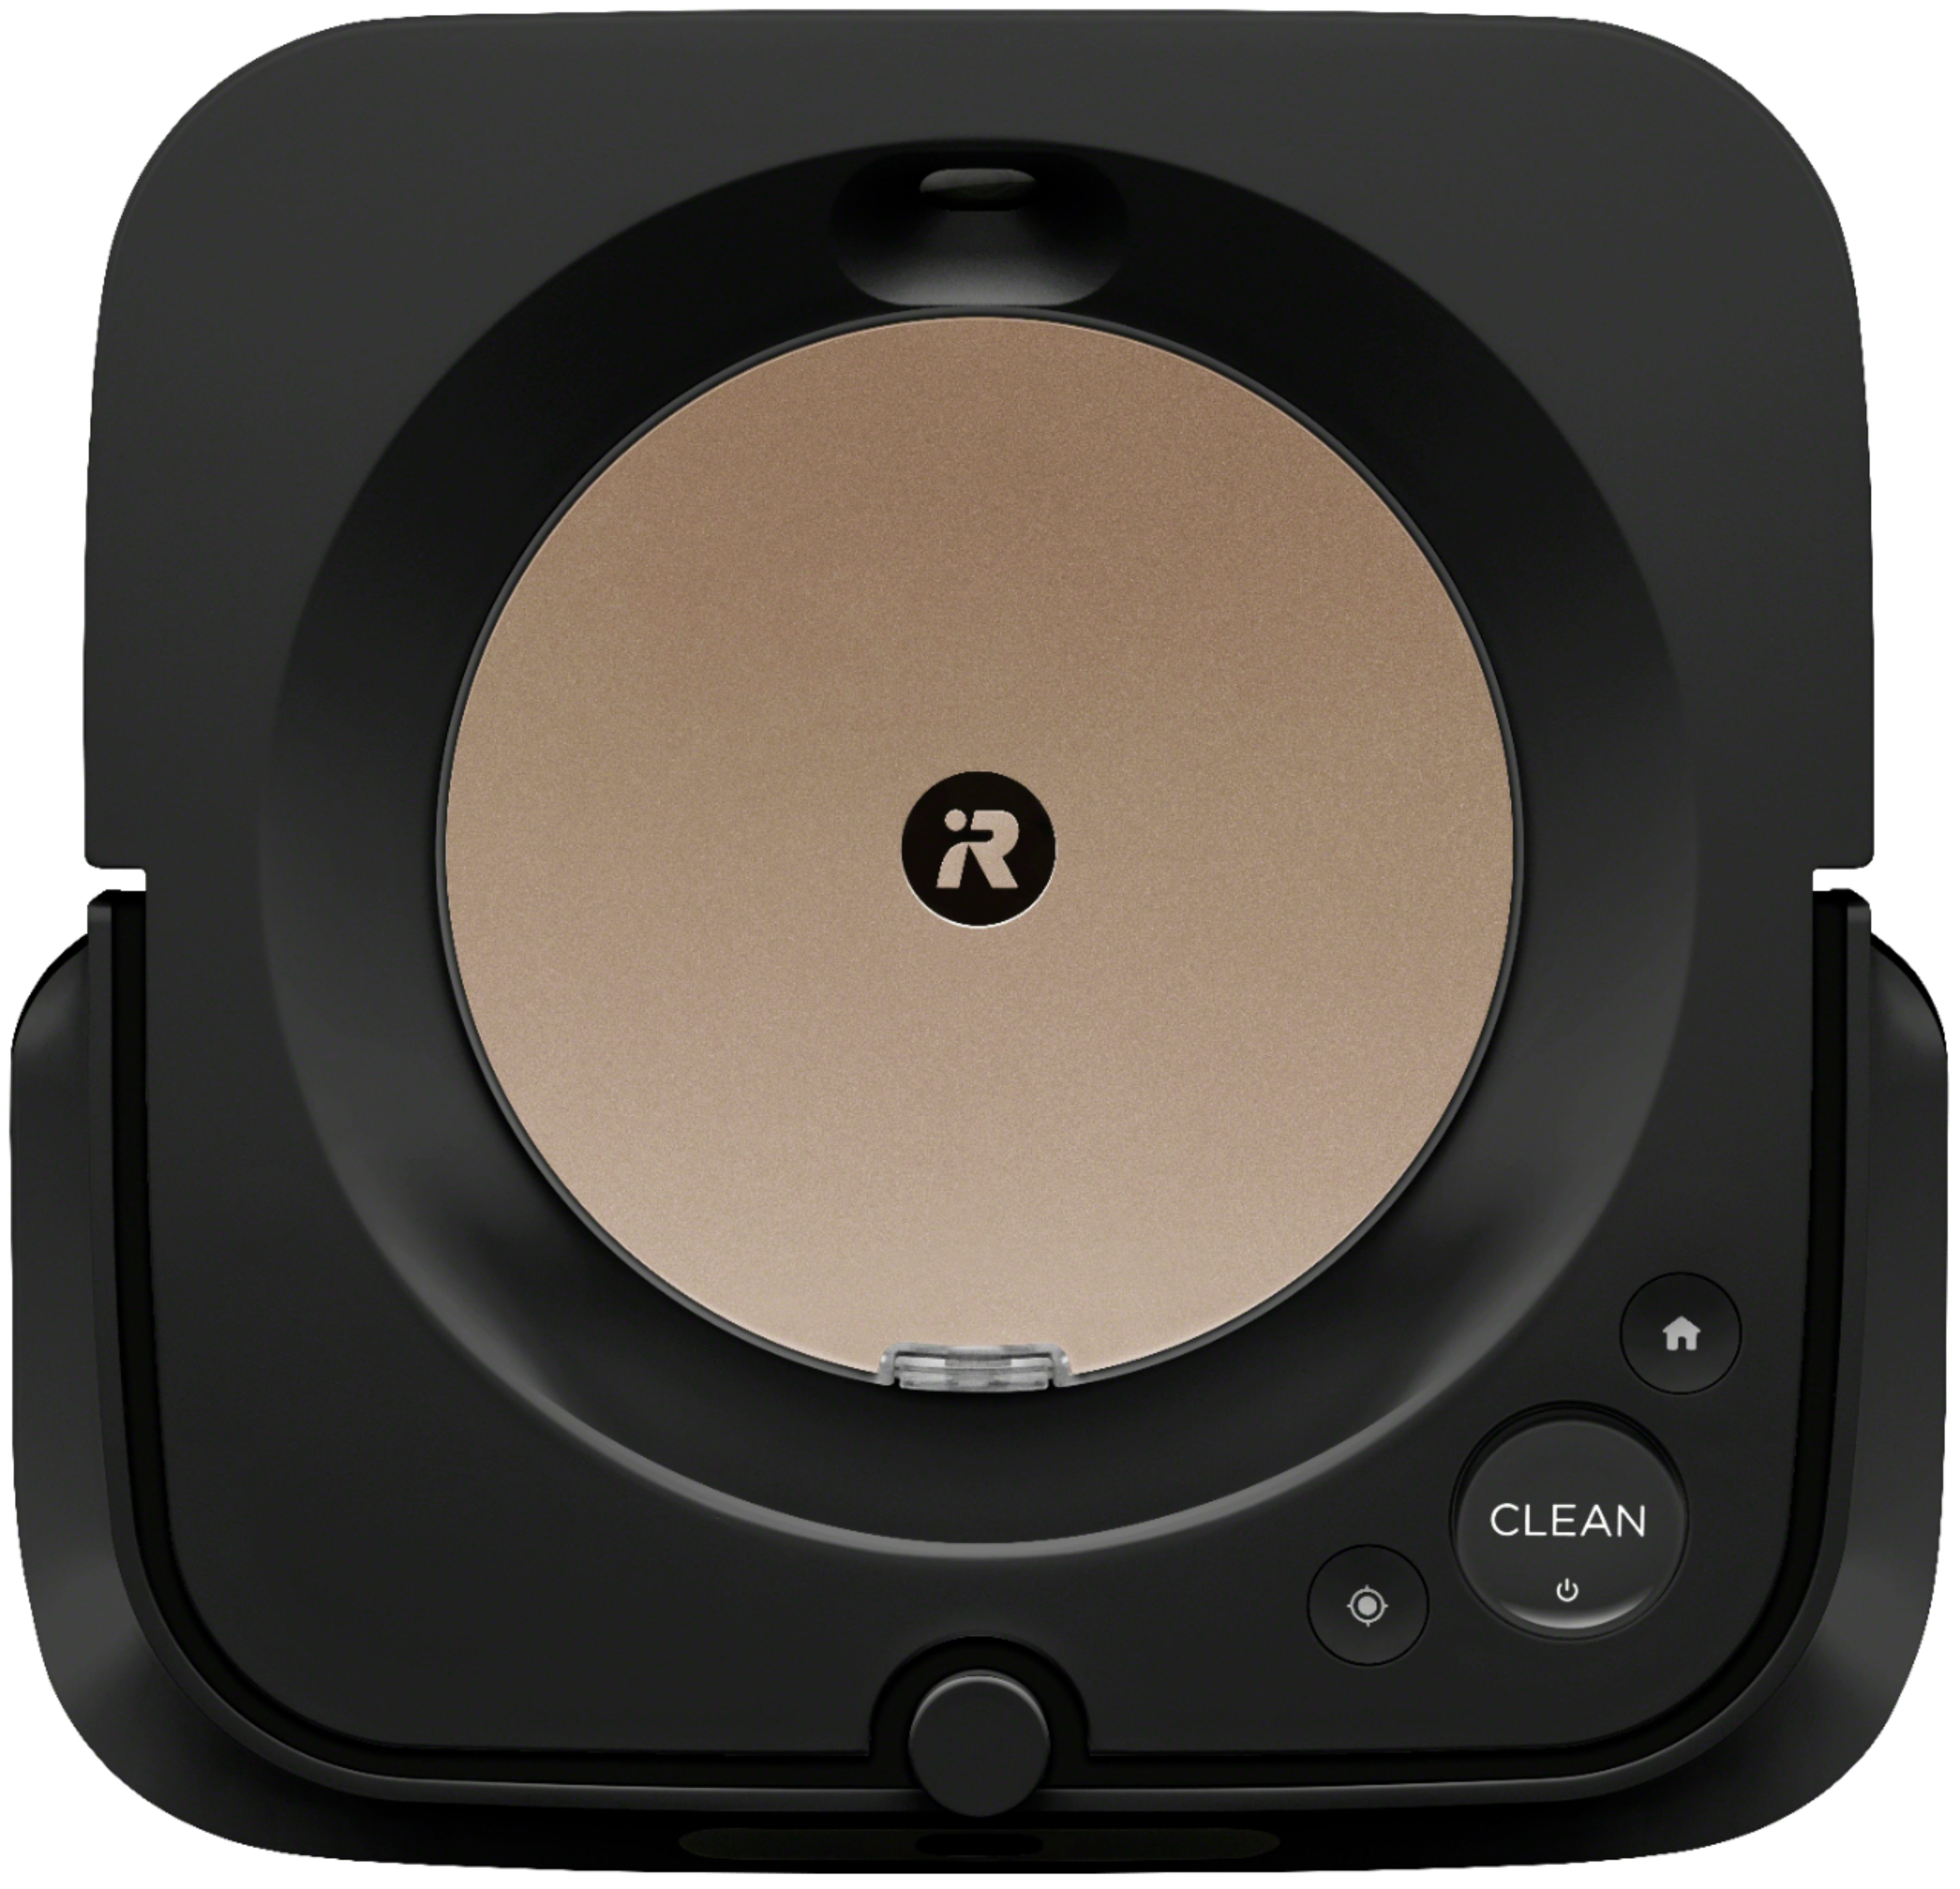 iRobot Roomba s9+ (9550) Vacuum & Braava jet m6 (6112) Robot Mop bundle Black 4720096 - Buy